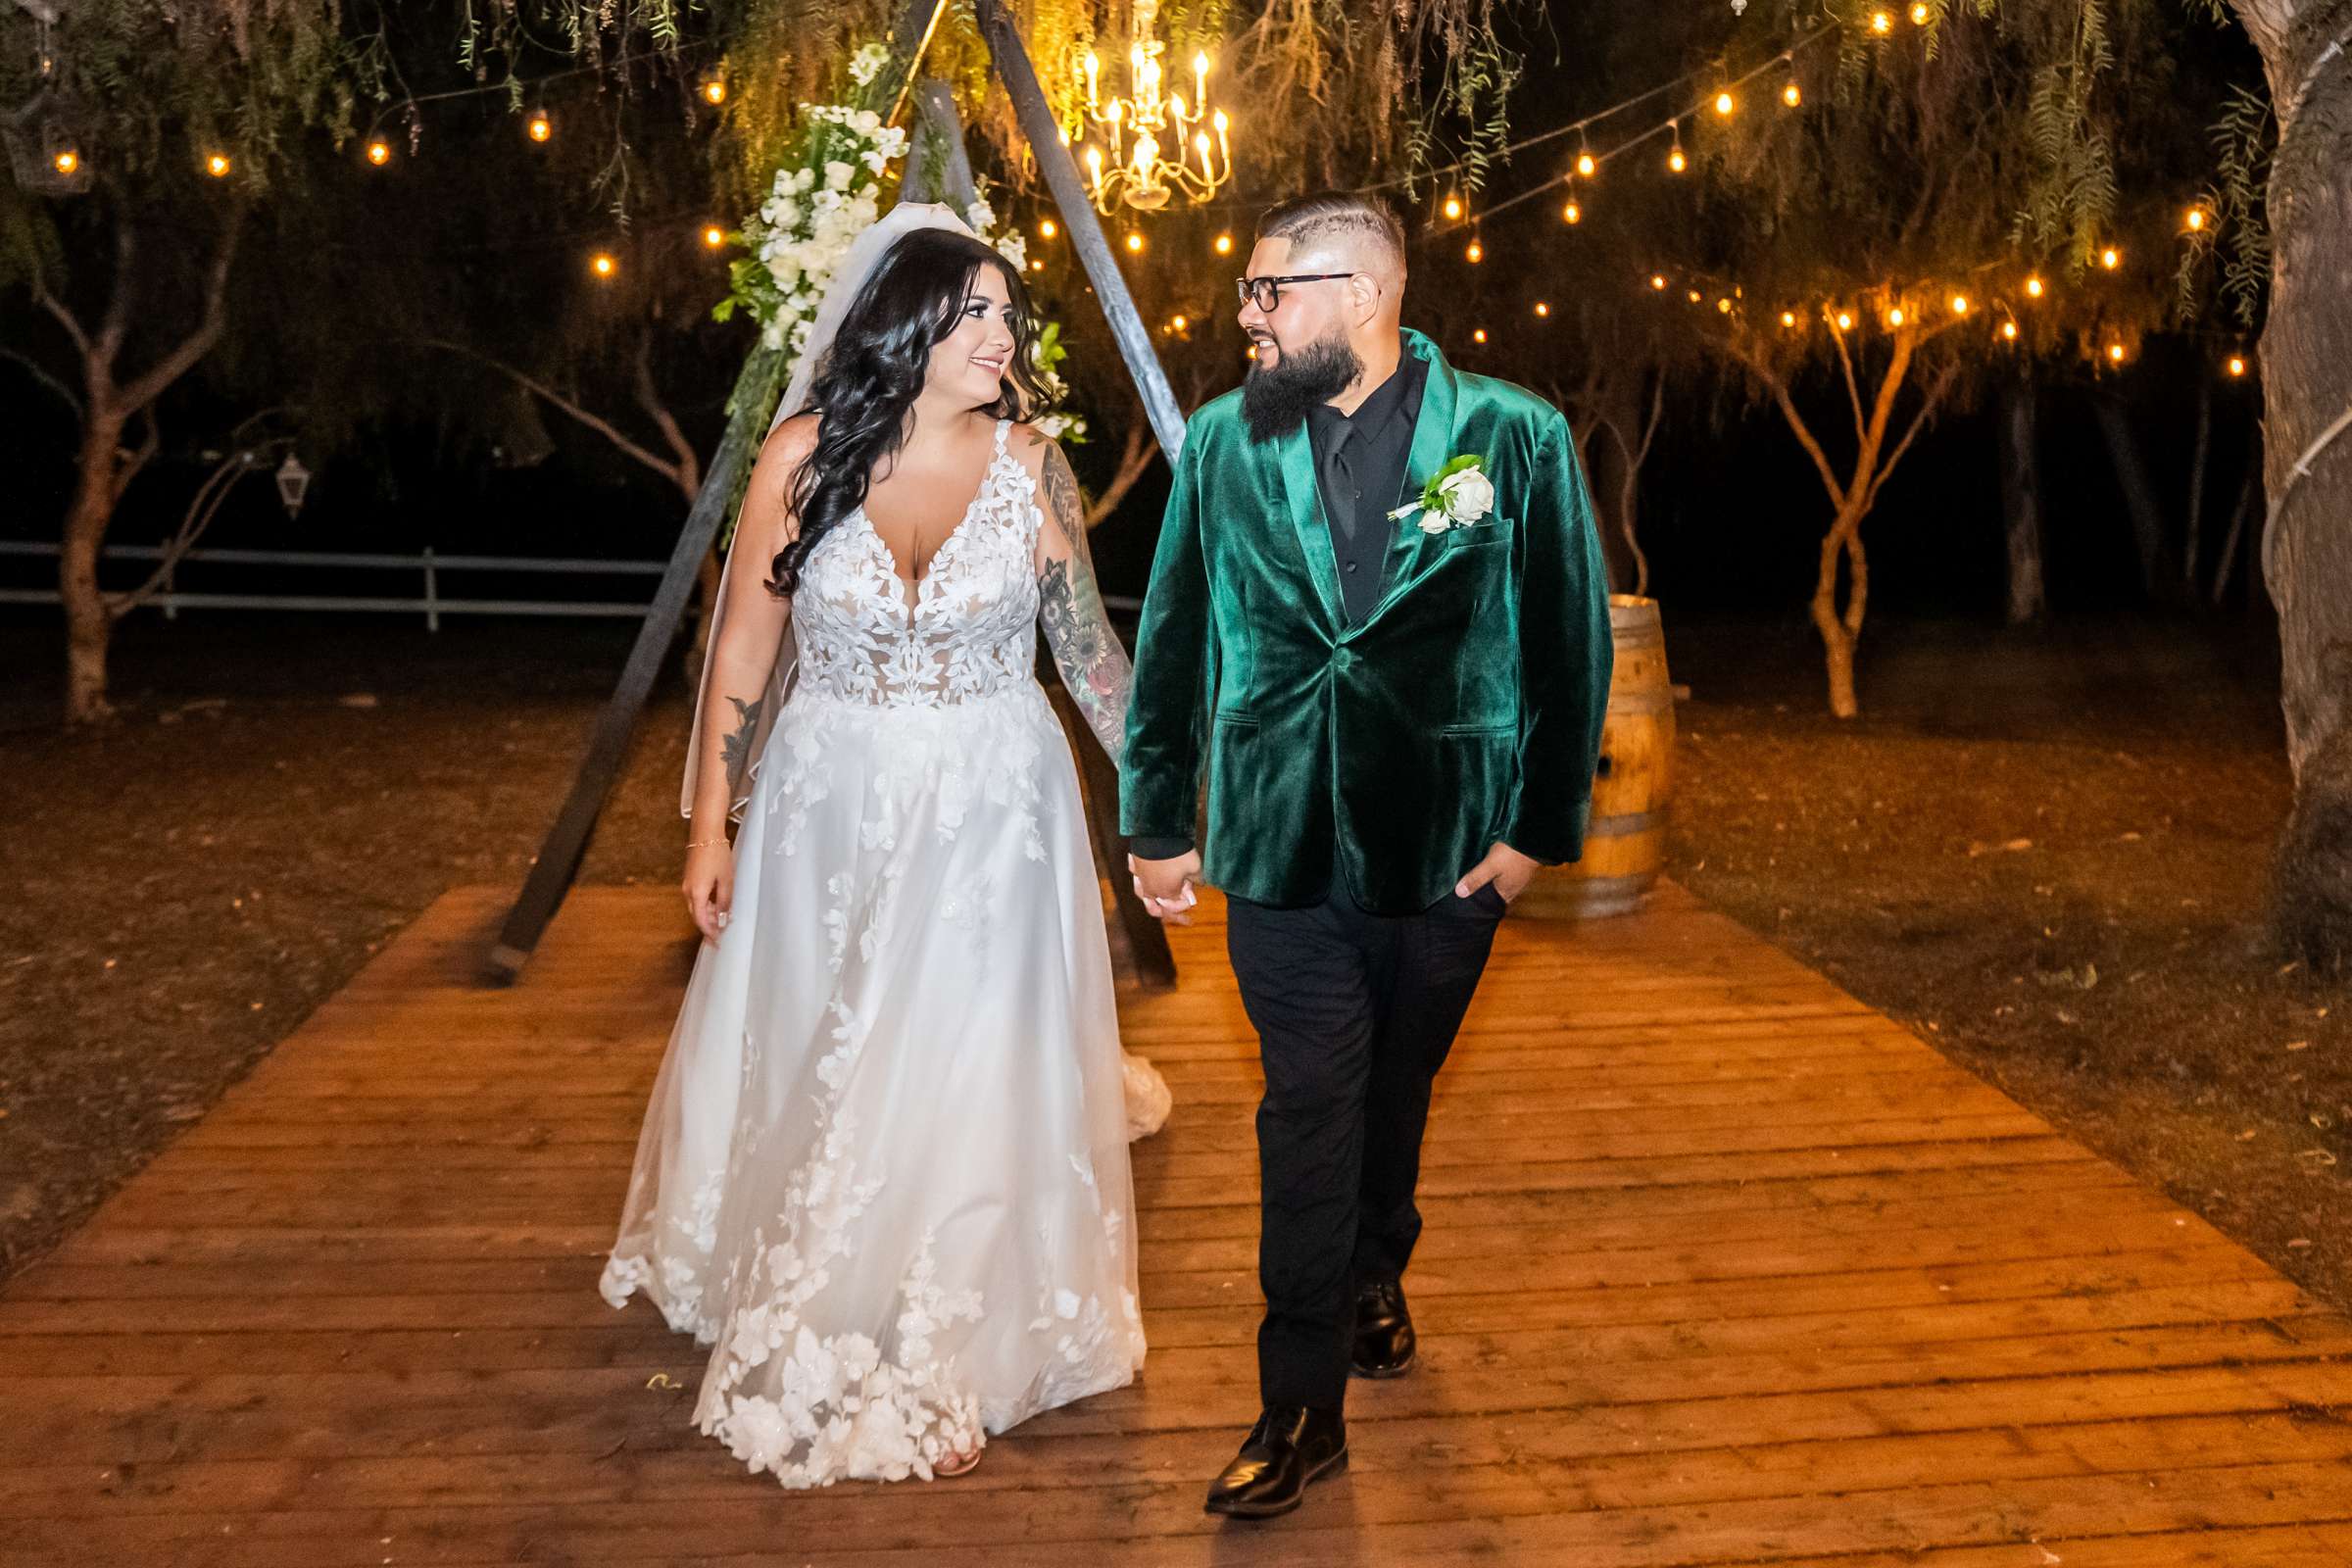 La Hacienda Wedding, Ashley and Alvaro Wedding Photo #15 by True Photography